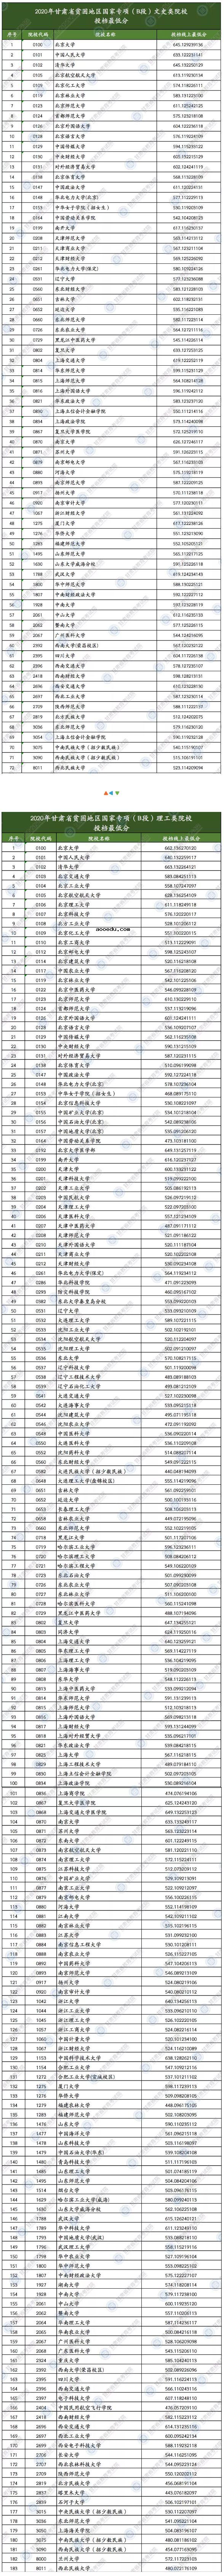 2020甘肃高考国家专项B段投档最低分